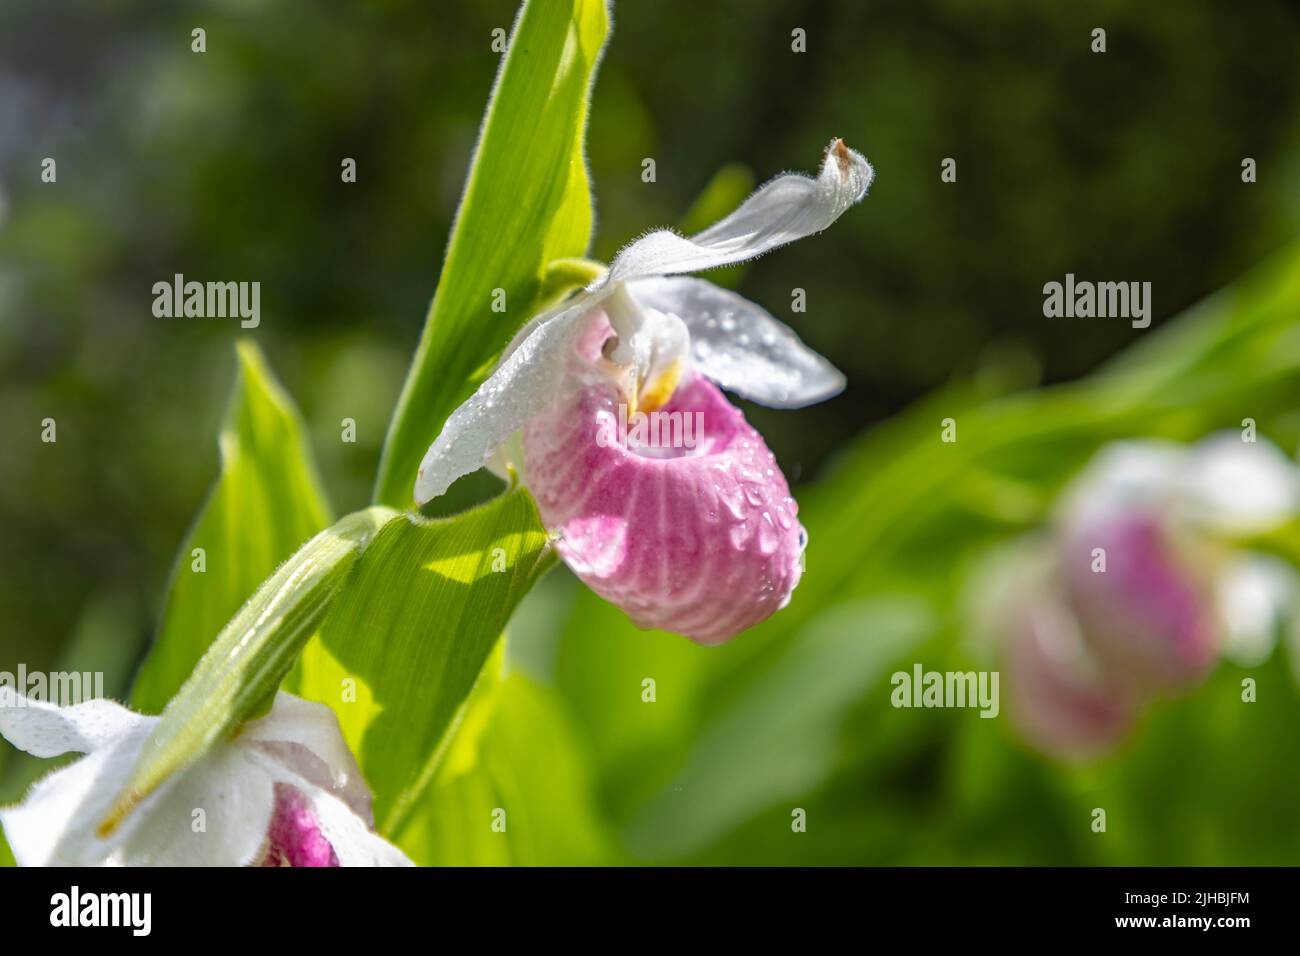 Le Slipper Lady est une espèce sauvage de fleurs d'orchidées qui poussent dans la région sauvage du Minnesota Northwoods Banque D'Images